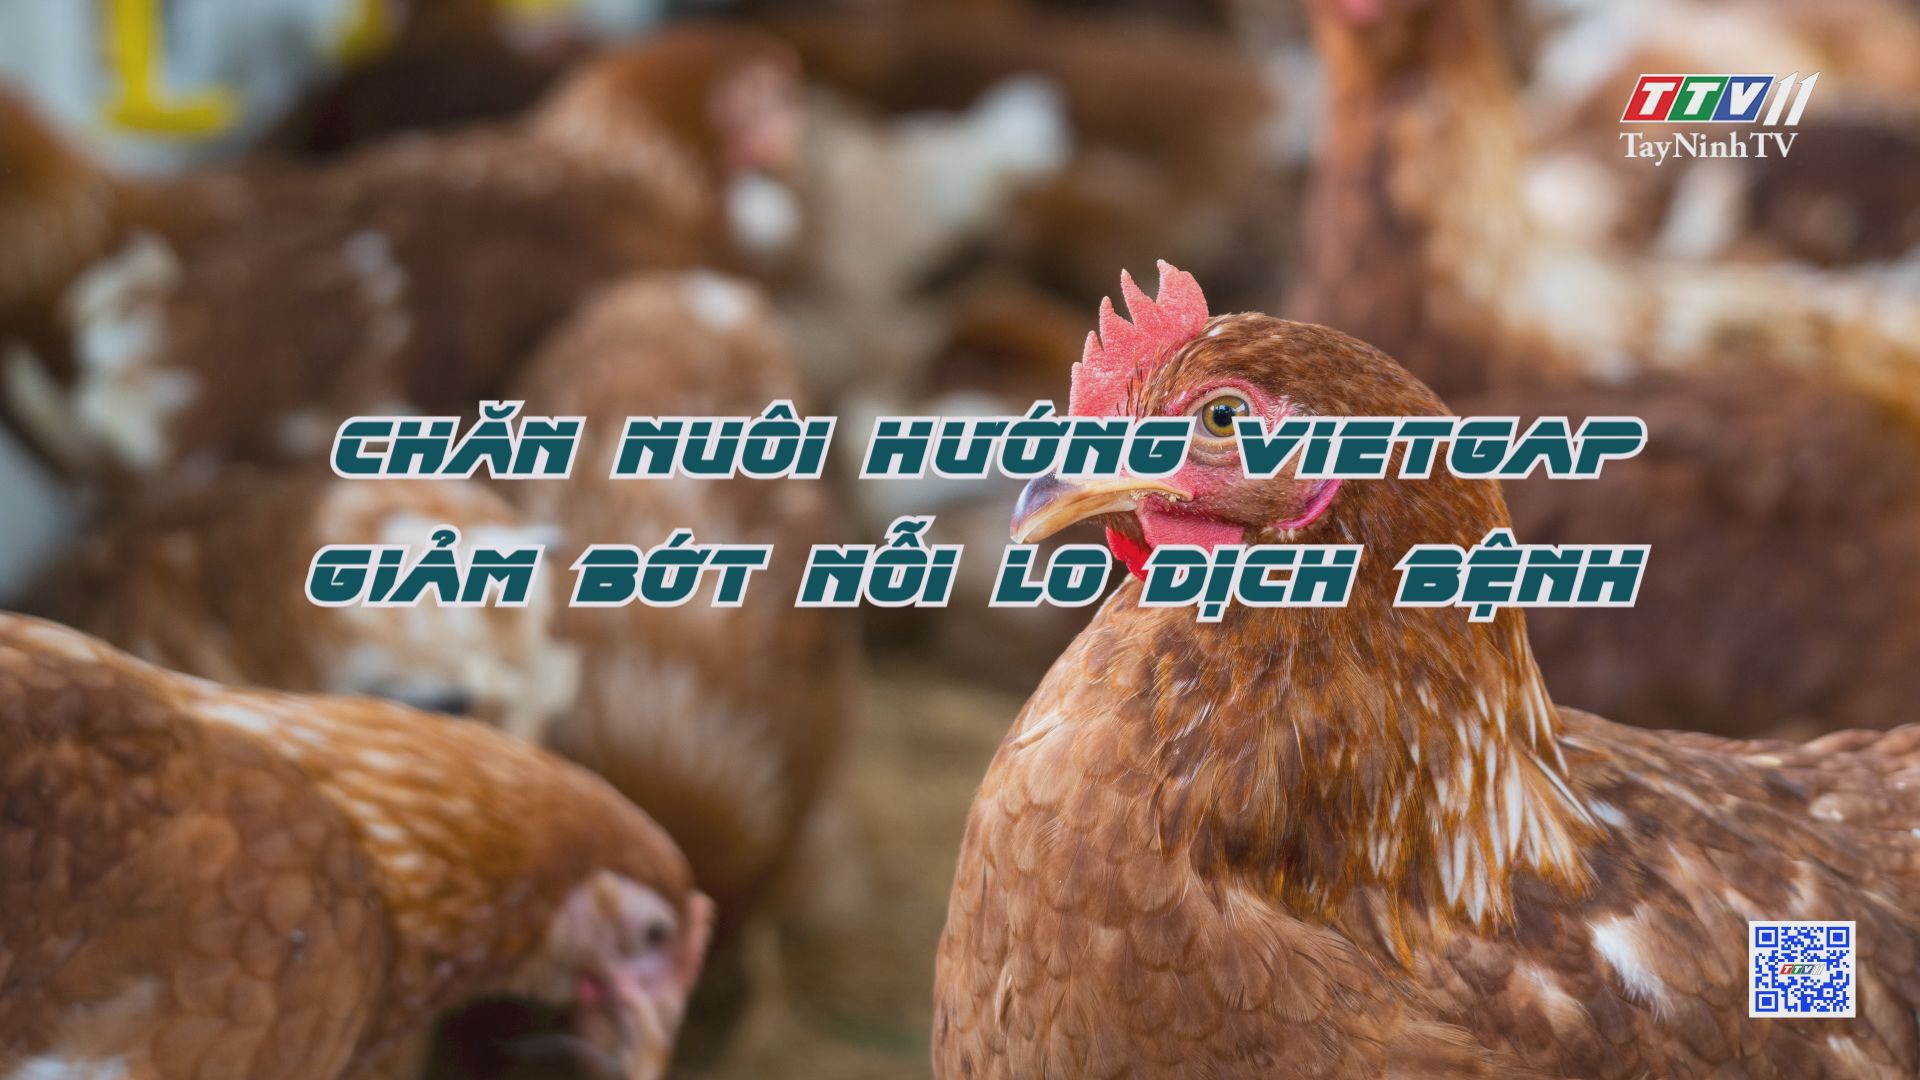 Chăn nuôi hướng VietGAP giảm bớt nỗi lo dịch bệnh | NÔNG NGHIỆP TÂY NINH | TayNinhTV